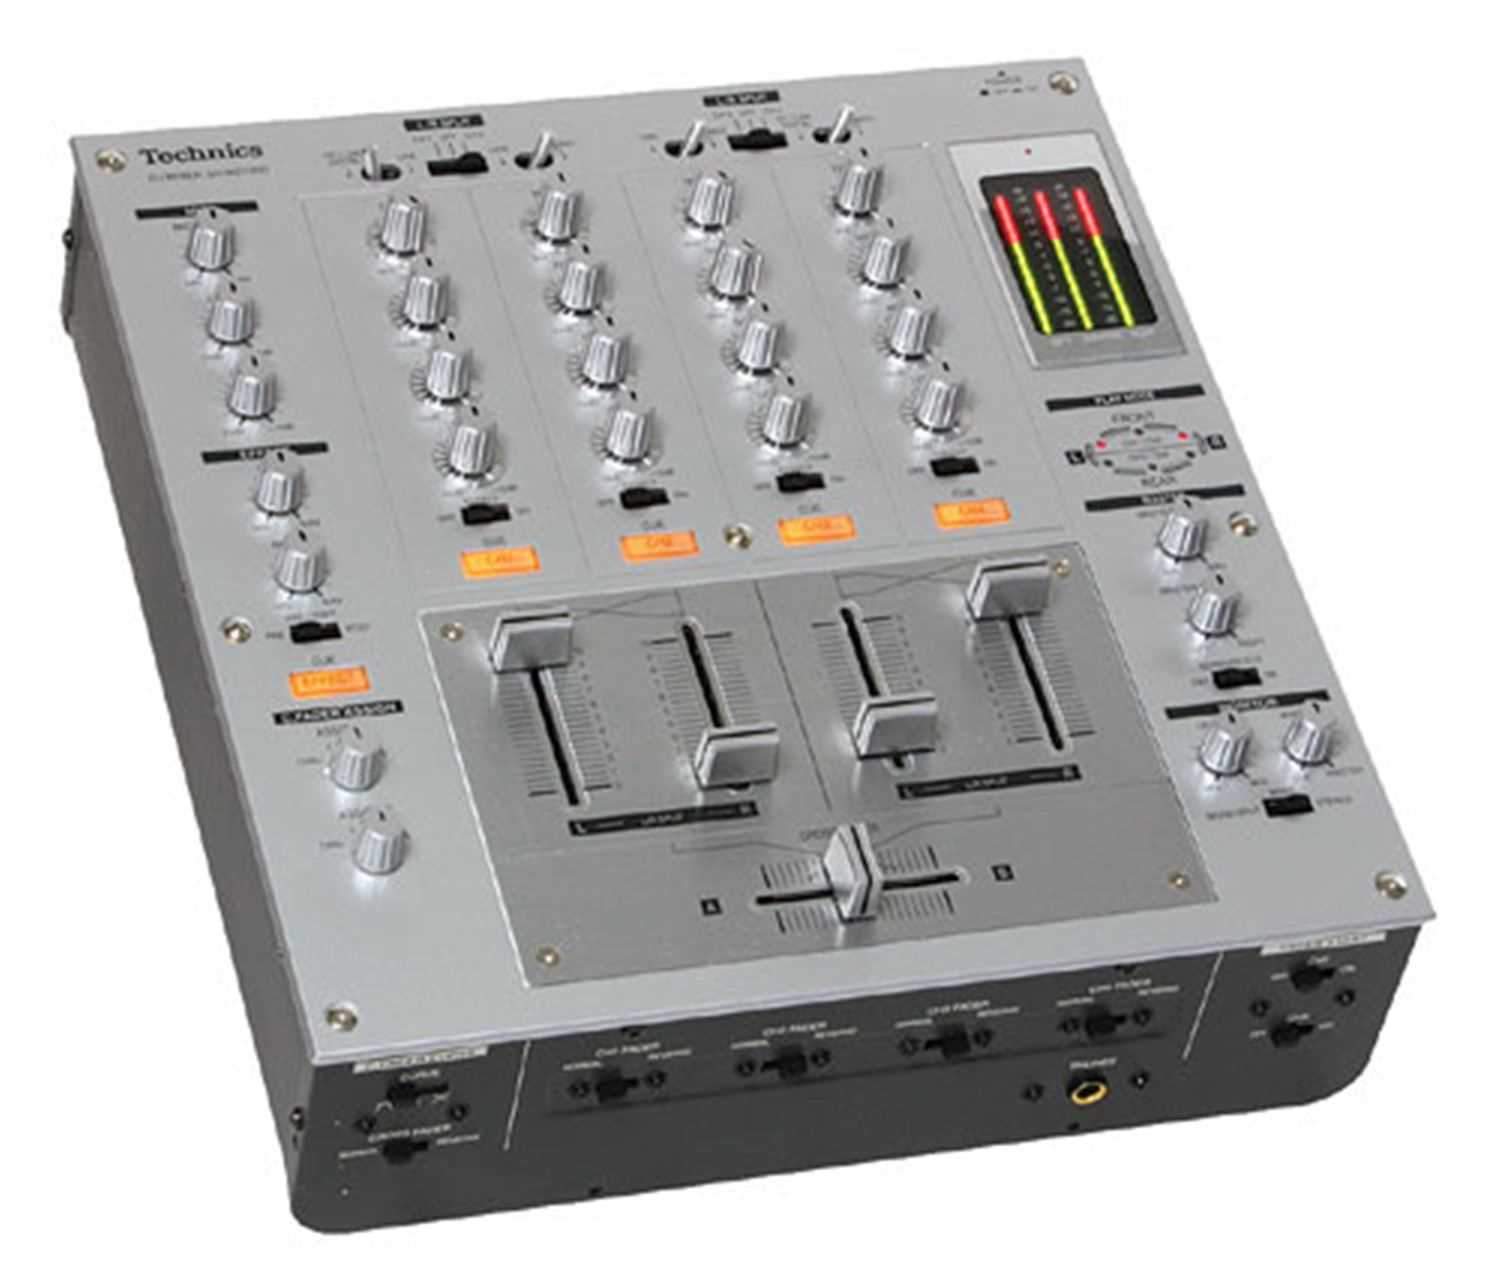 日本販売 708 Technics テクトロニクス SH-MZ1200 DJミキサー - 楽器/器材